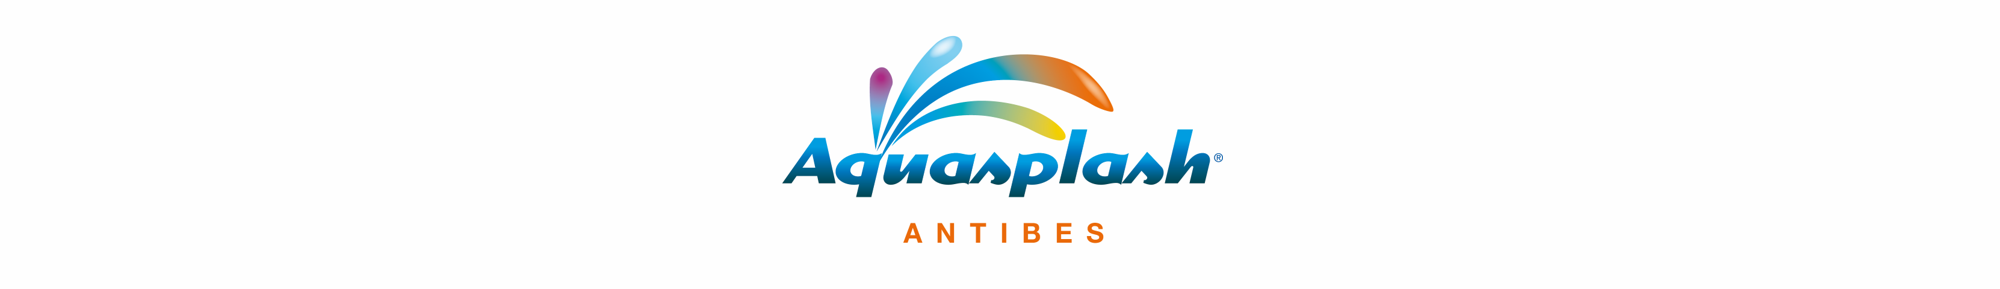 AQUASPLASH logo